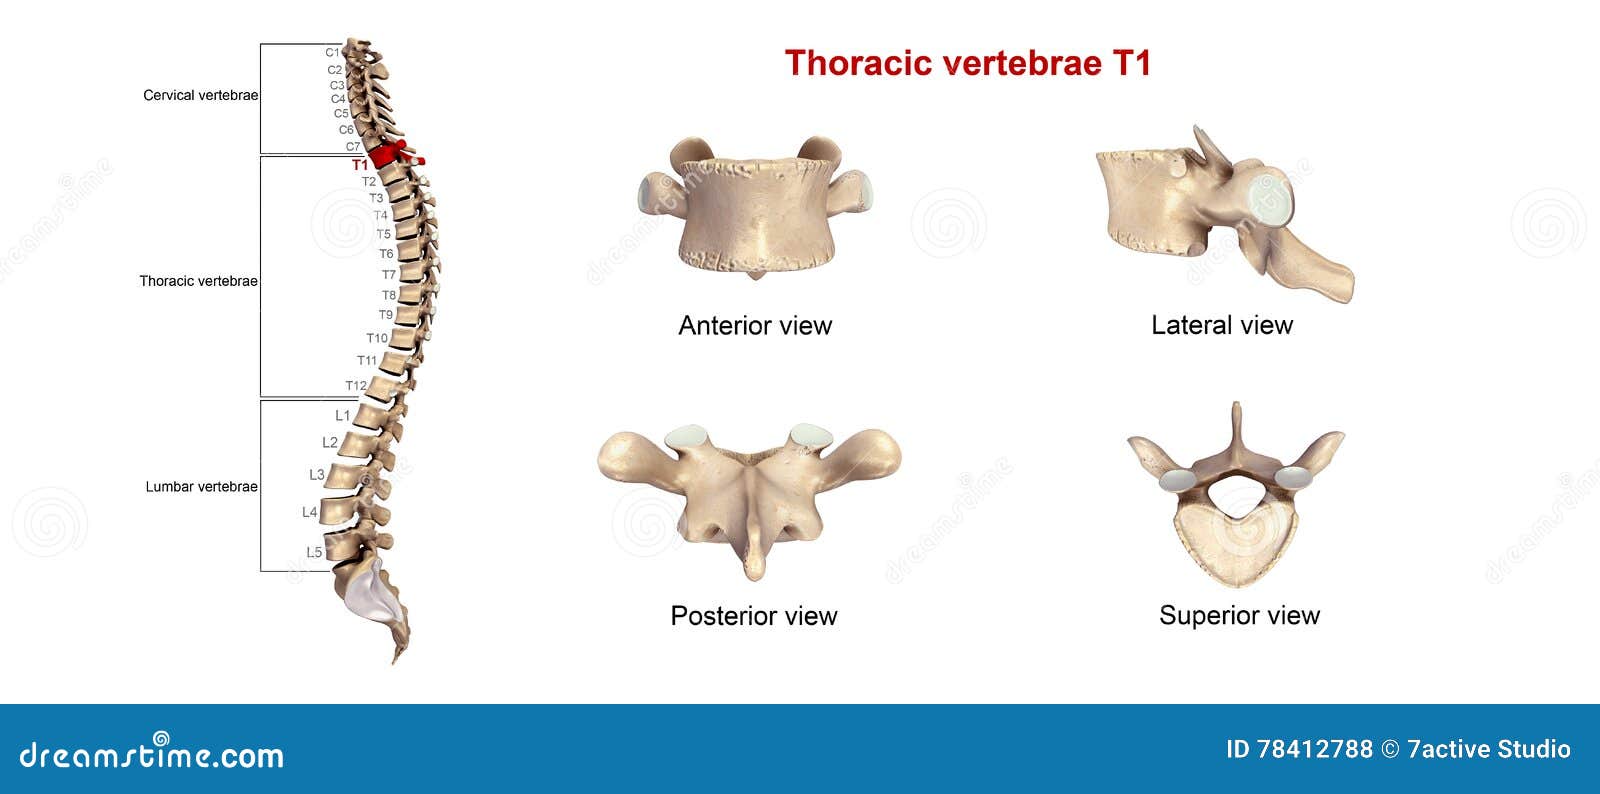 thoracic vertebrae t1